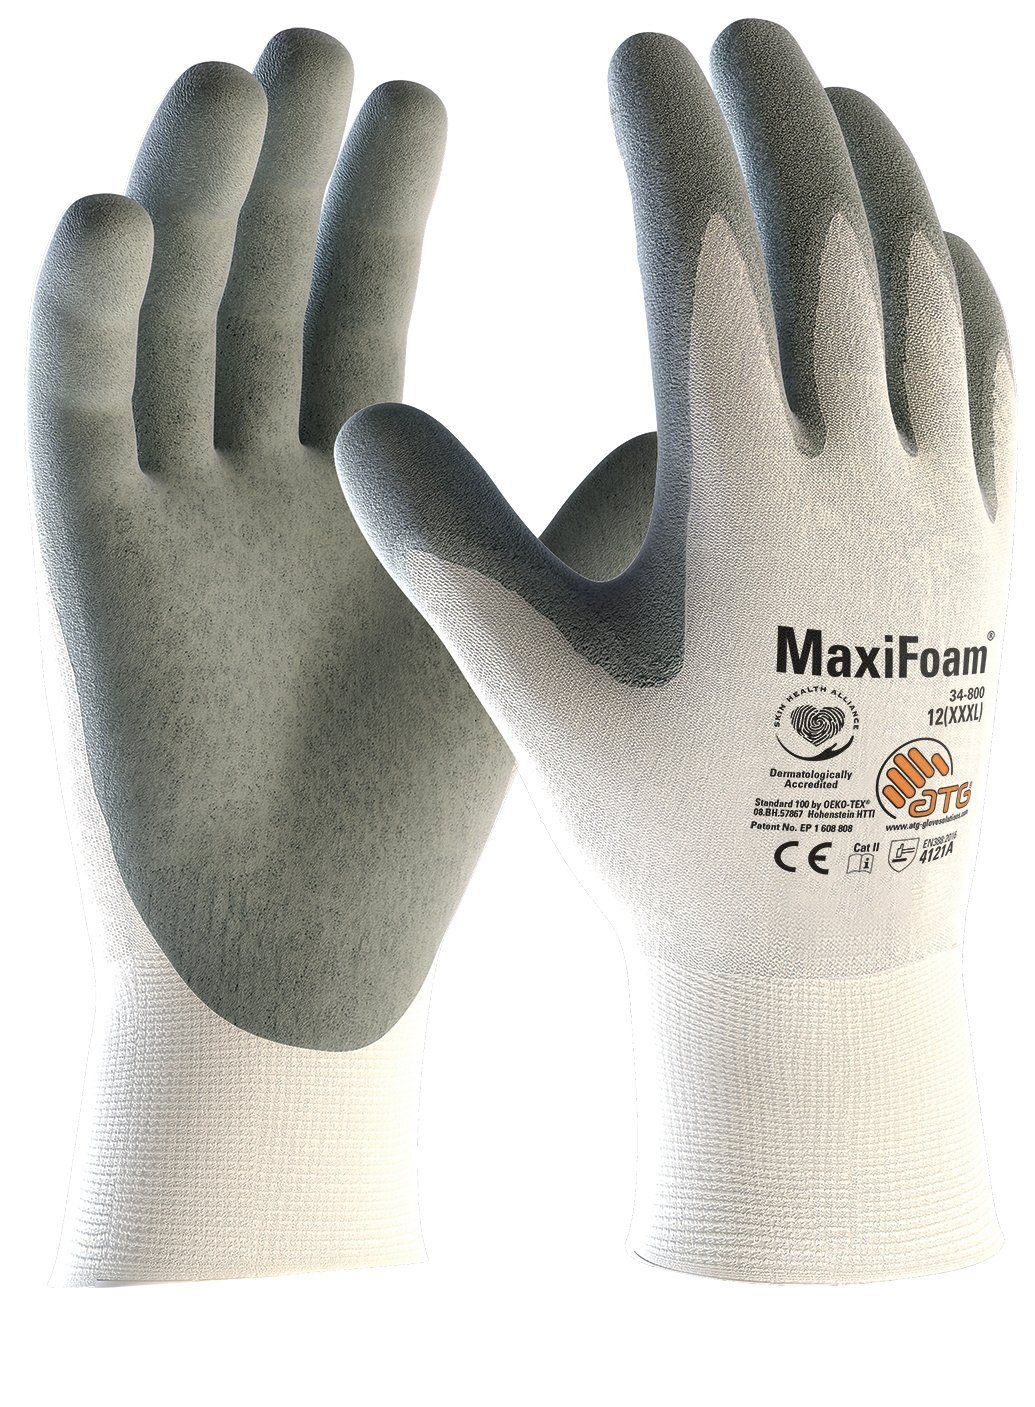 ATG Arbeitshandschuh-Set »Handschuhe MaxiFoam Nylon-Strickhandschuh 34-800«  Atmungsaktiv online kaufen | OTTO